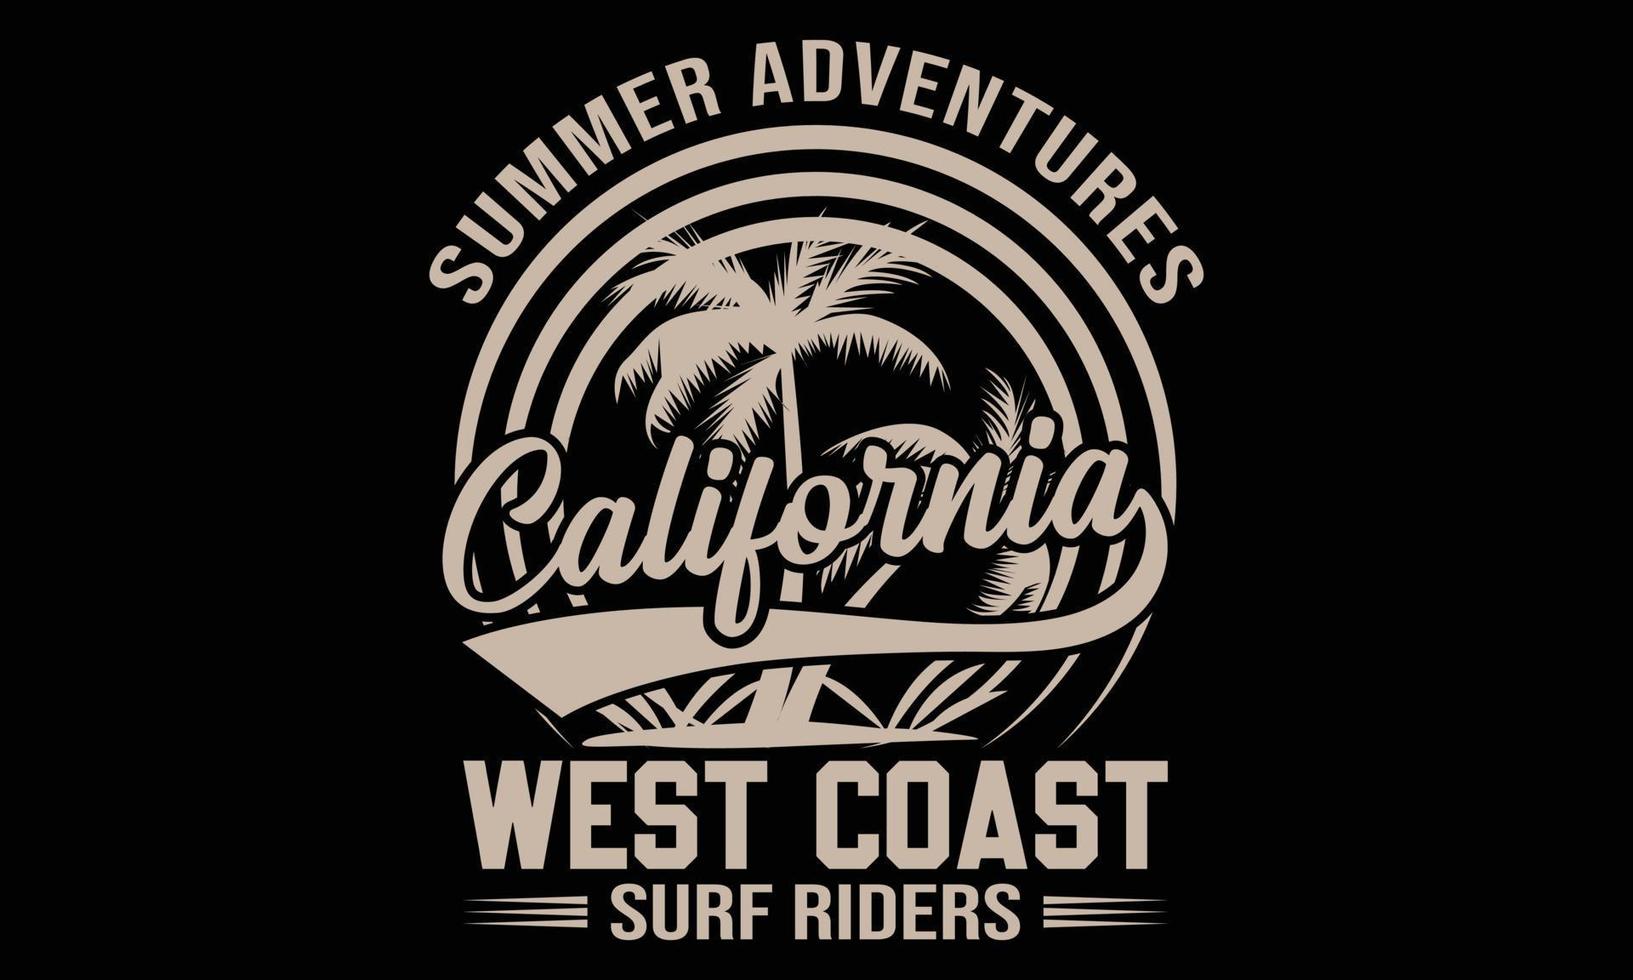 diseño de camisetas tipográficas del paraíso del surf. camiseta de tipografía de surf motivacional para niños creativos e ilustración de vector de tema de surf.